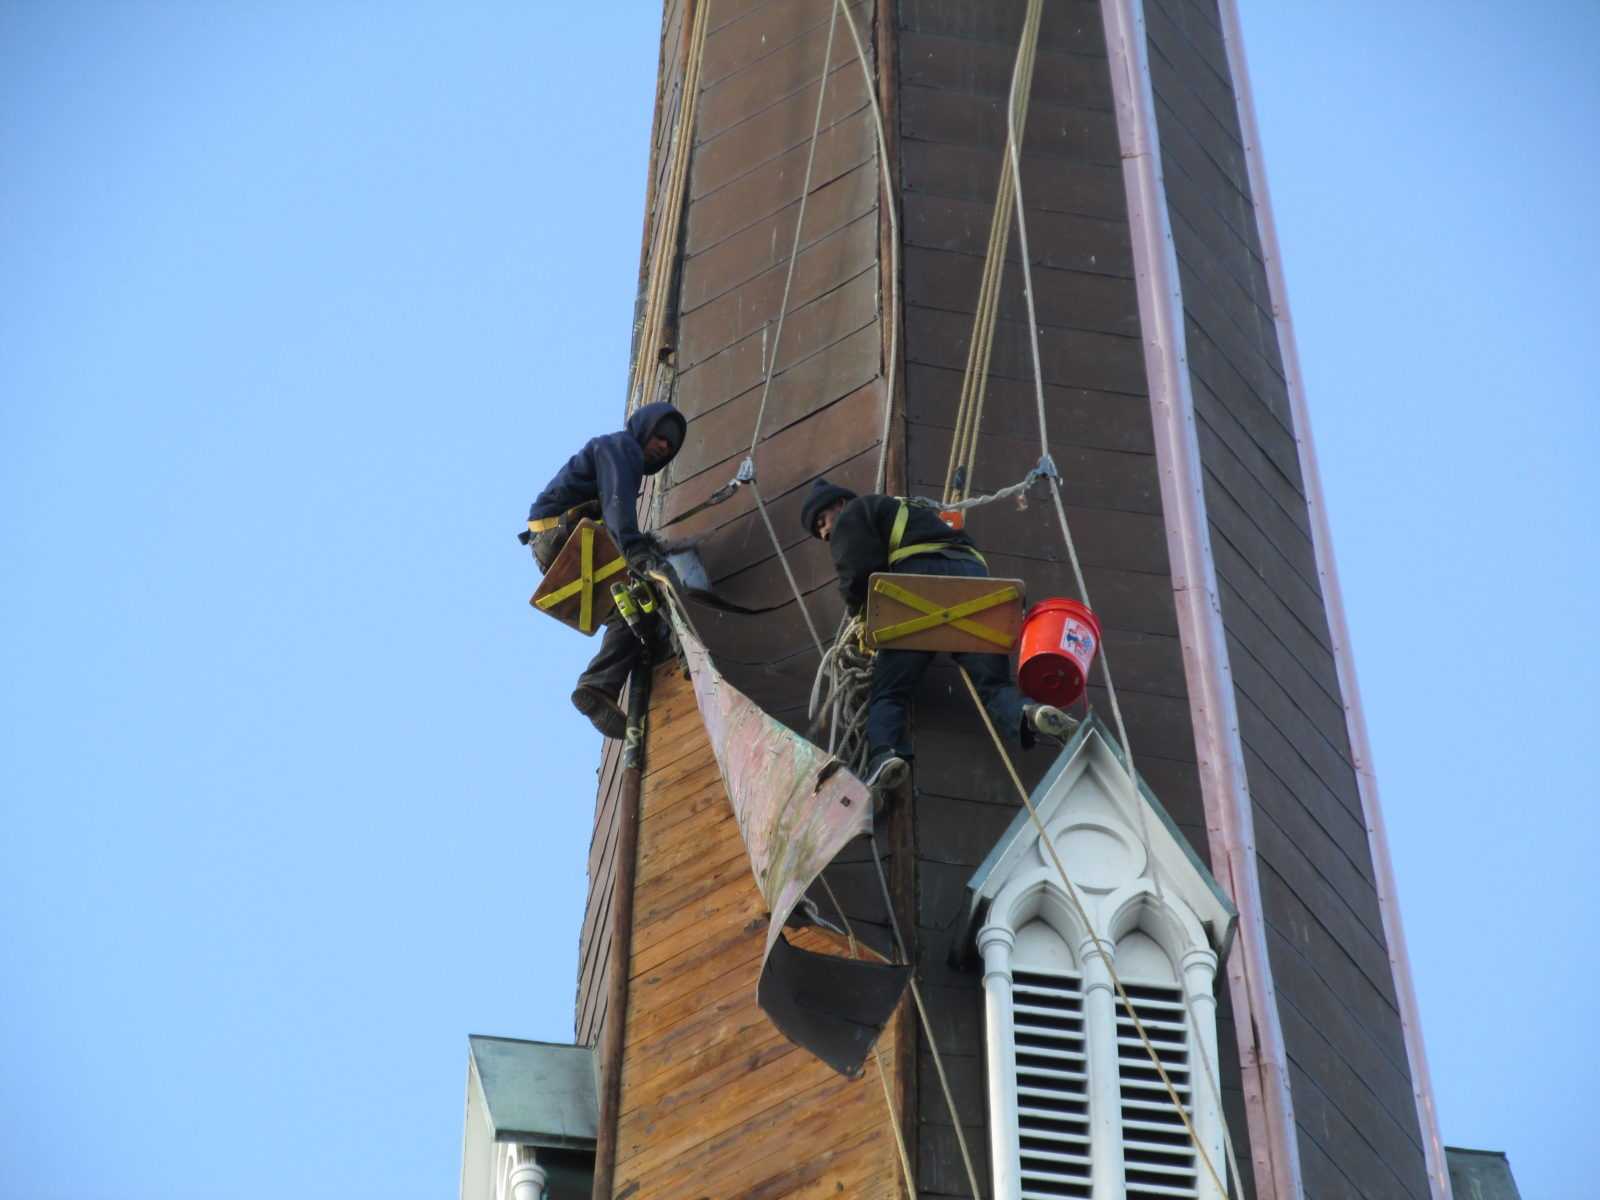 Repairing etal steeple